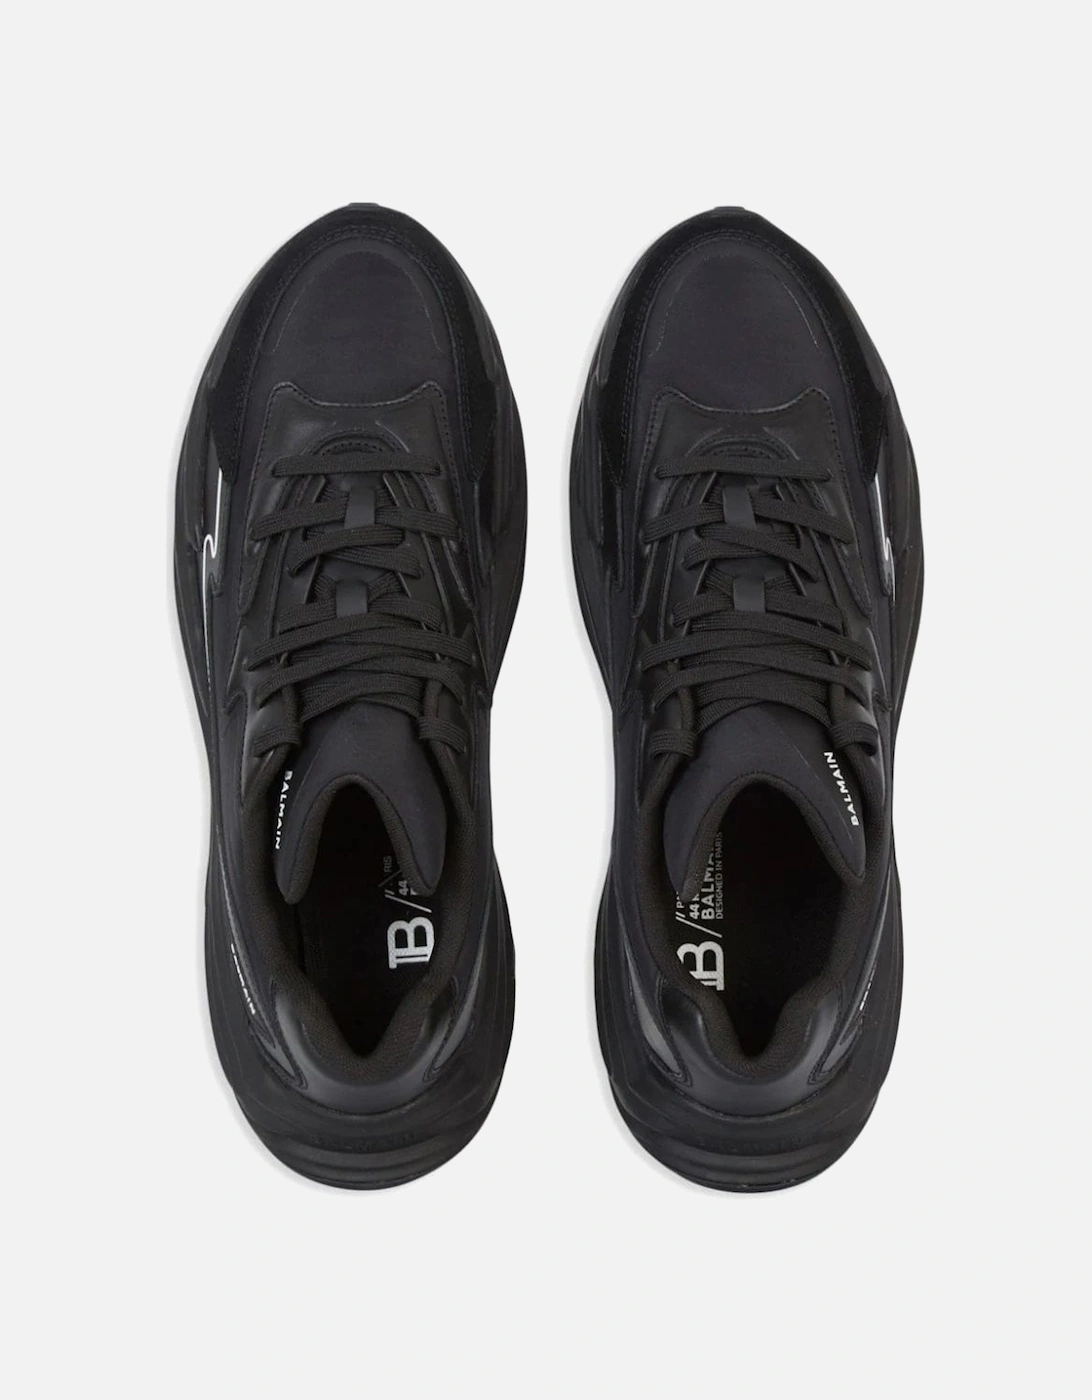 B DR4G0N Sneakers Black